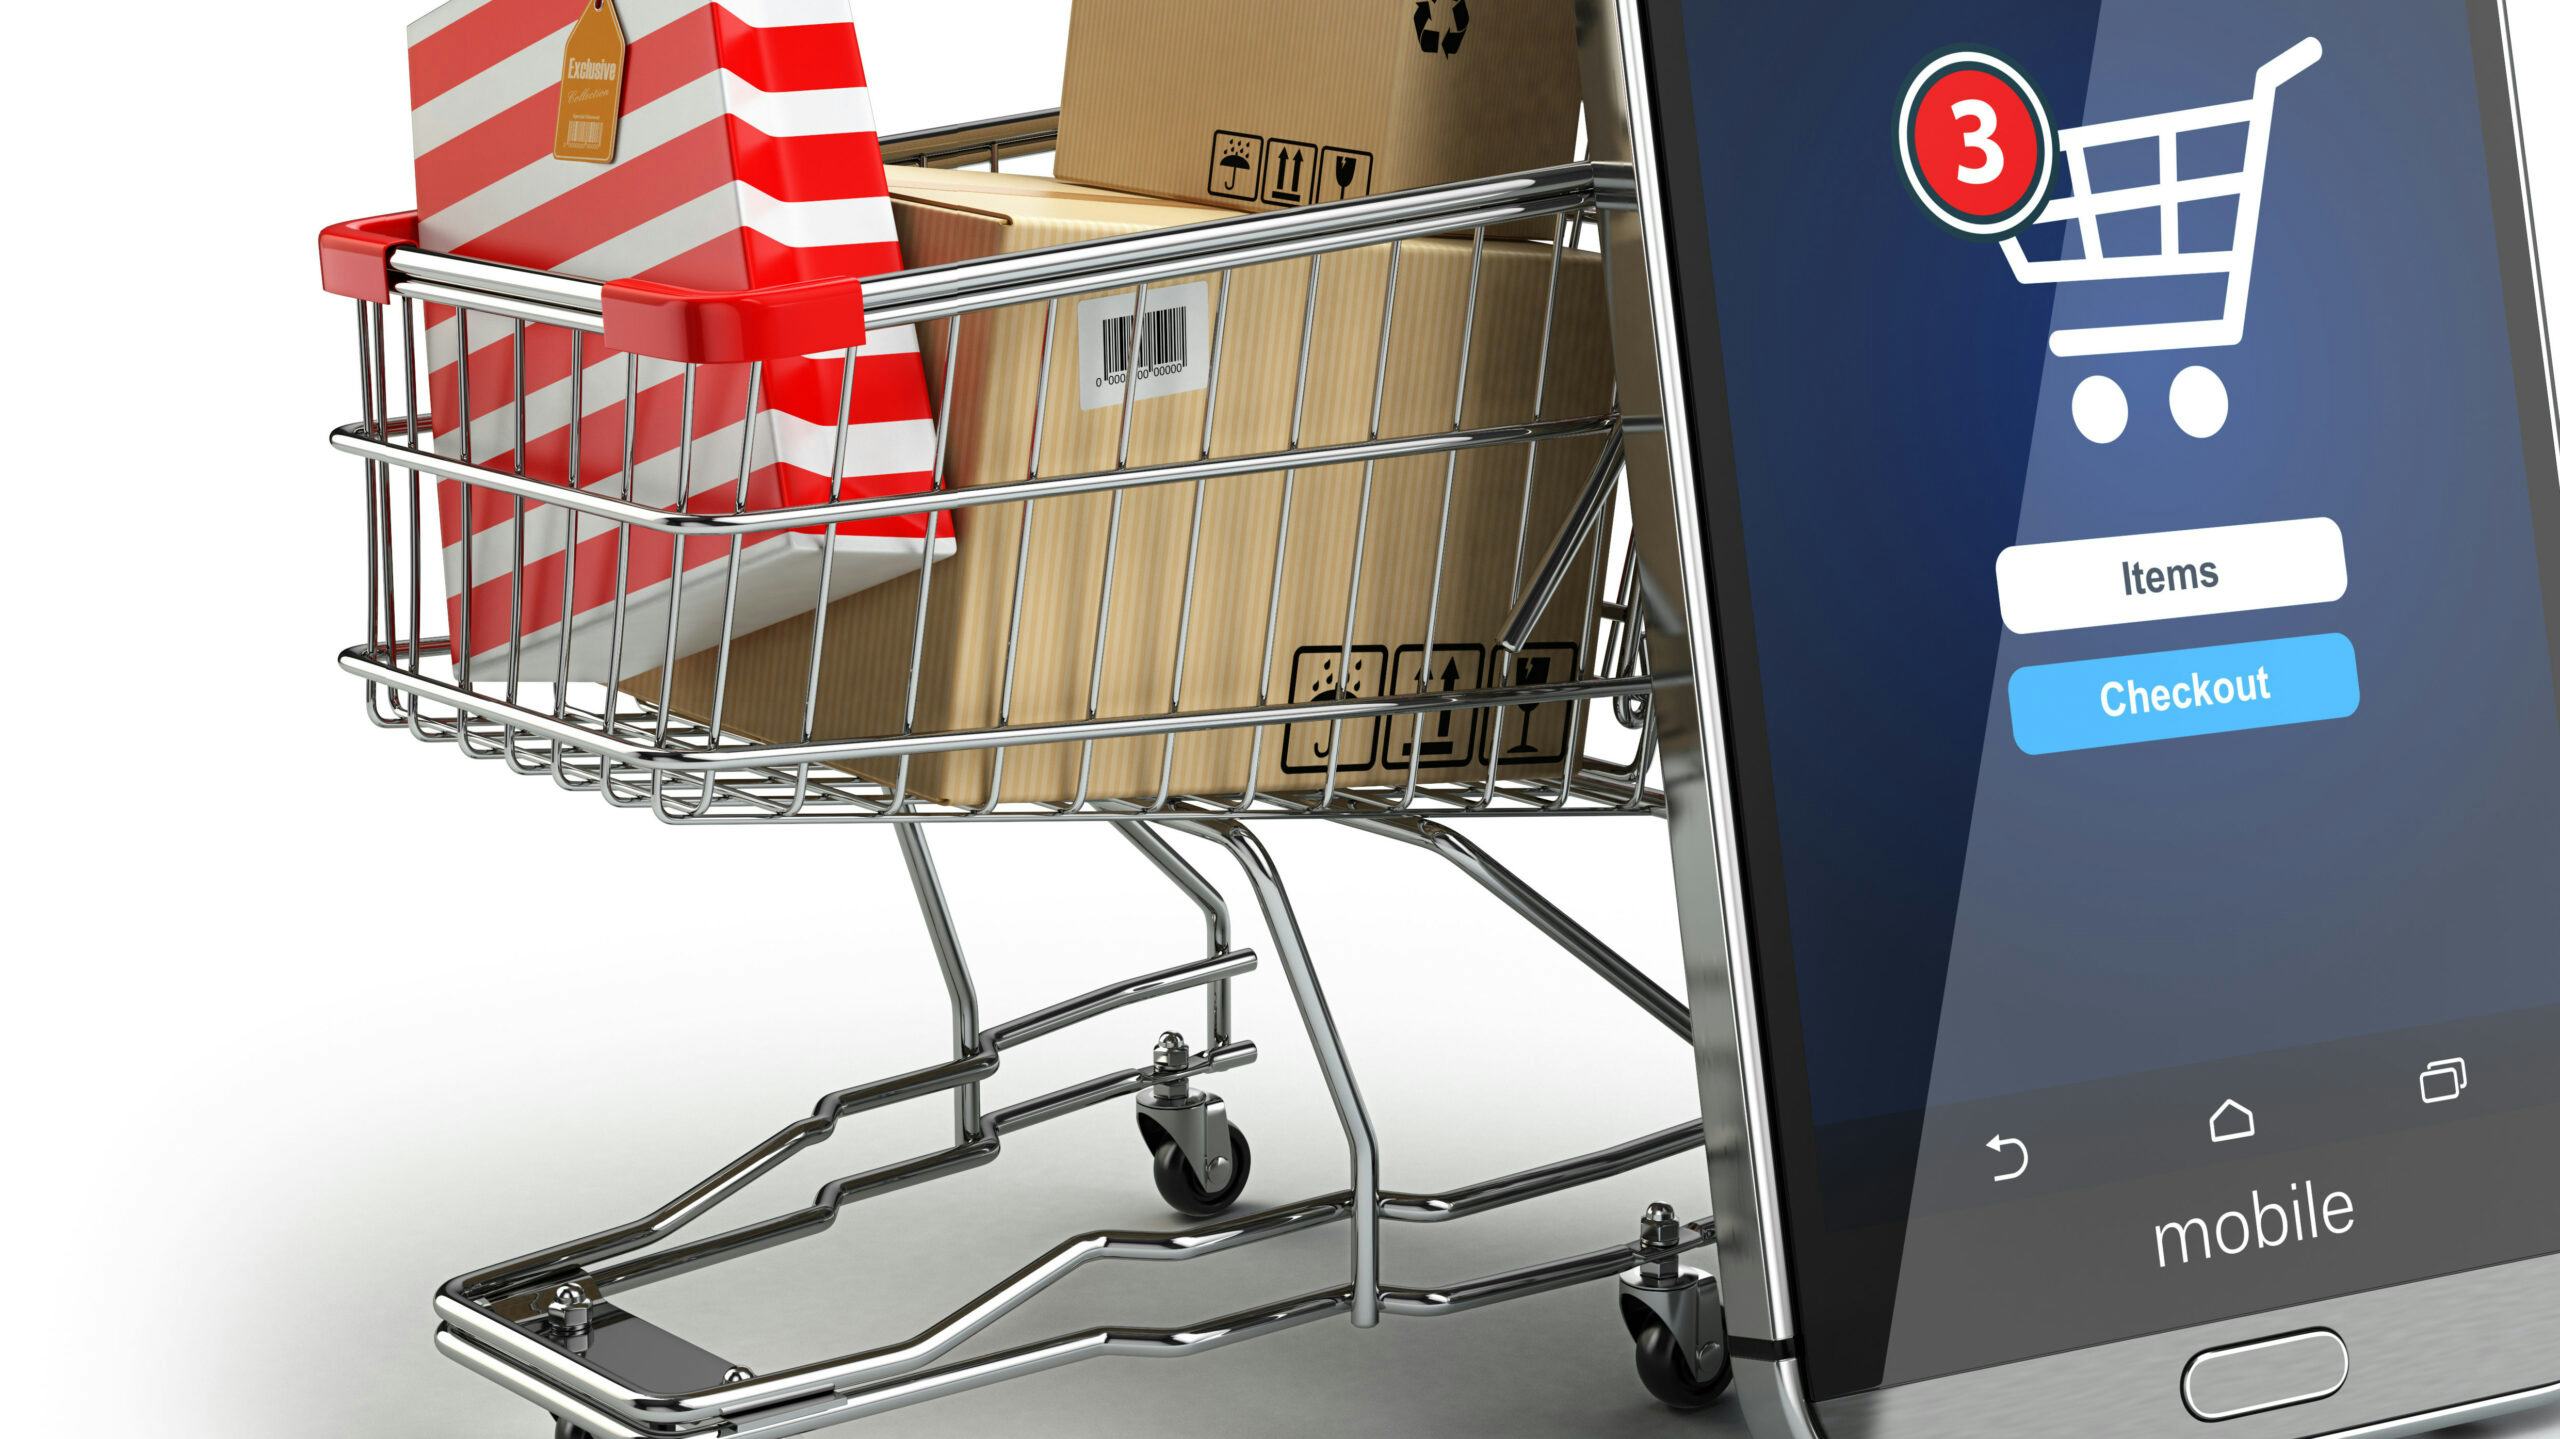 Schade e-commerce voor retail valt mee, terwijl logistiek profiteert